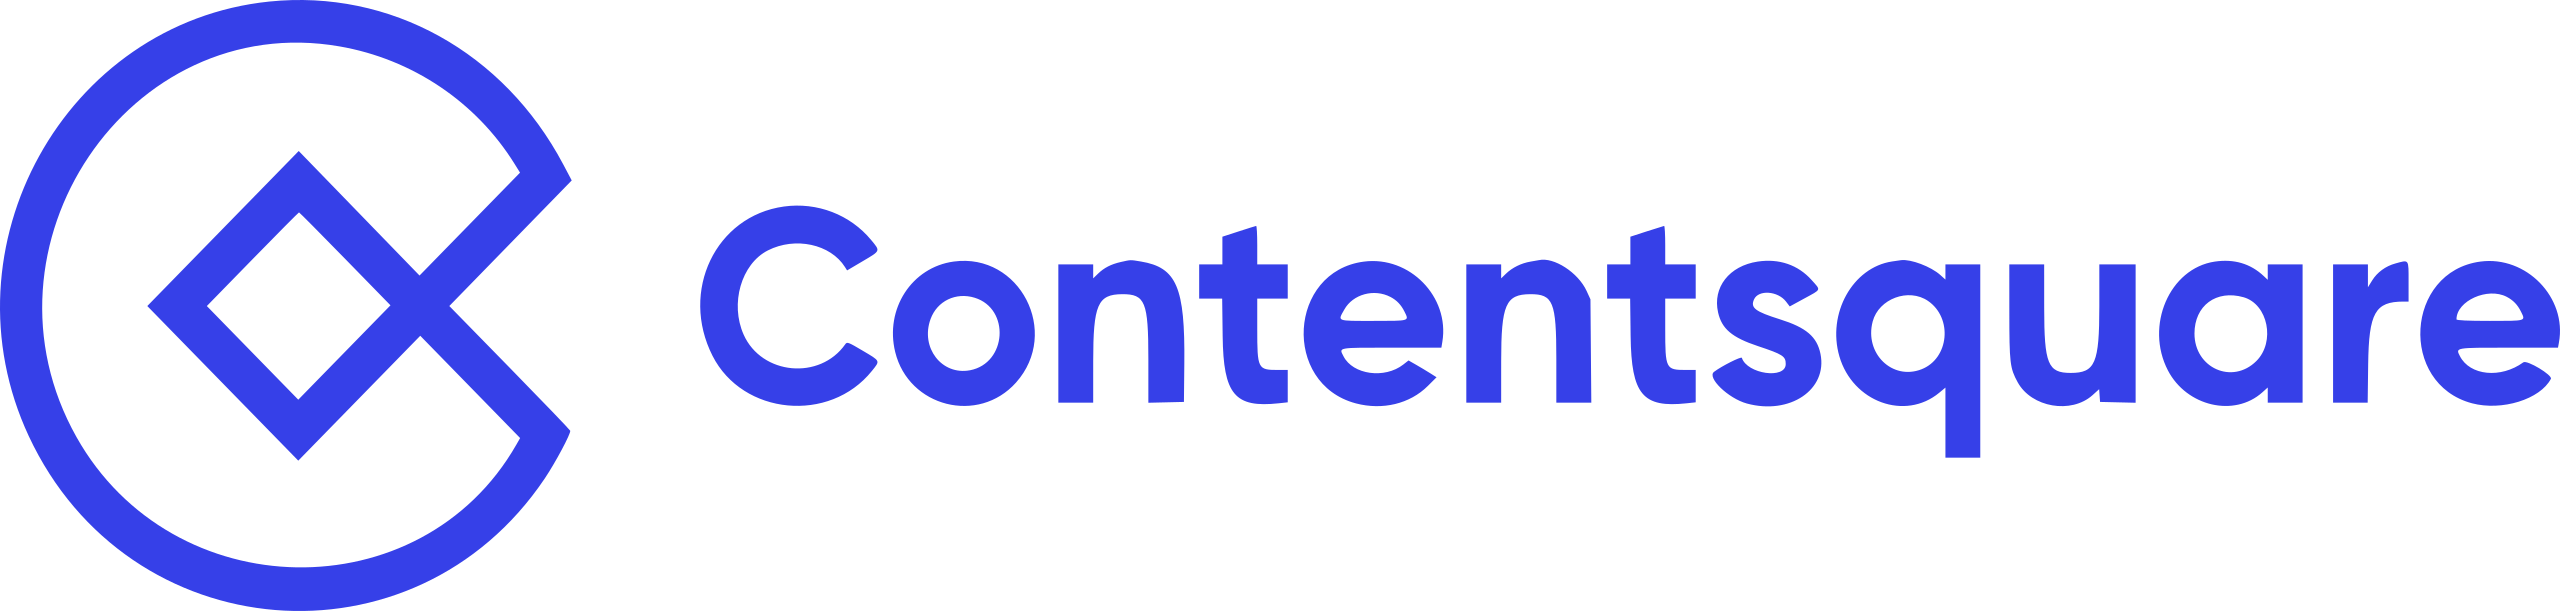 Contentsquare-logo.svg-Nov-18-2022-02-41-34-5358-PM